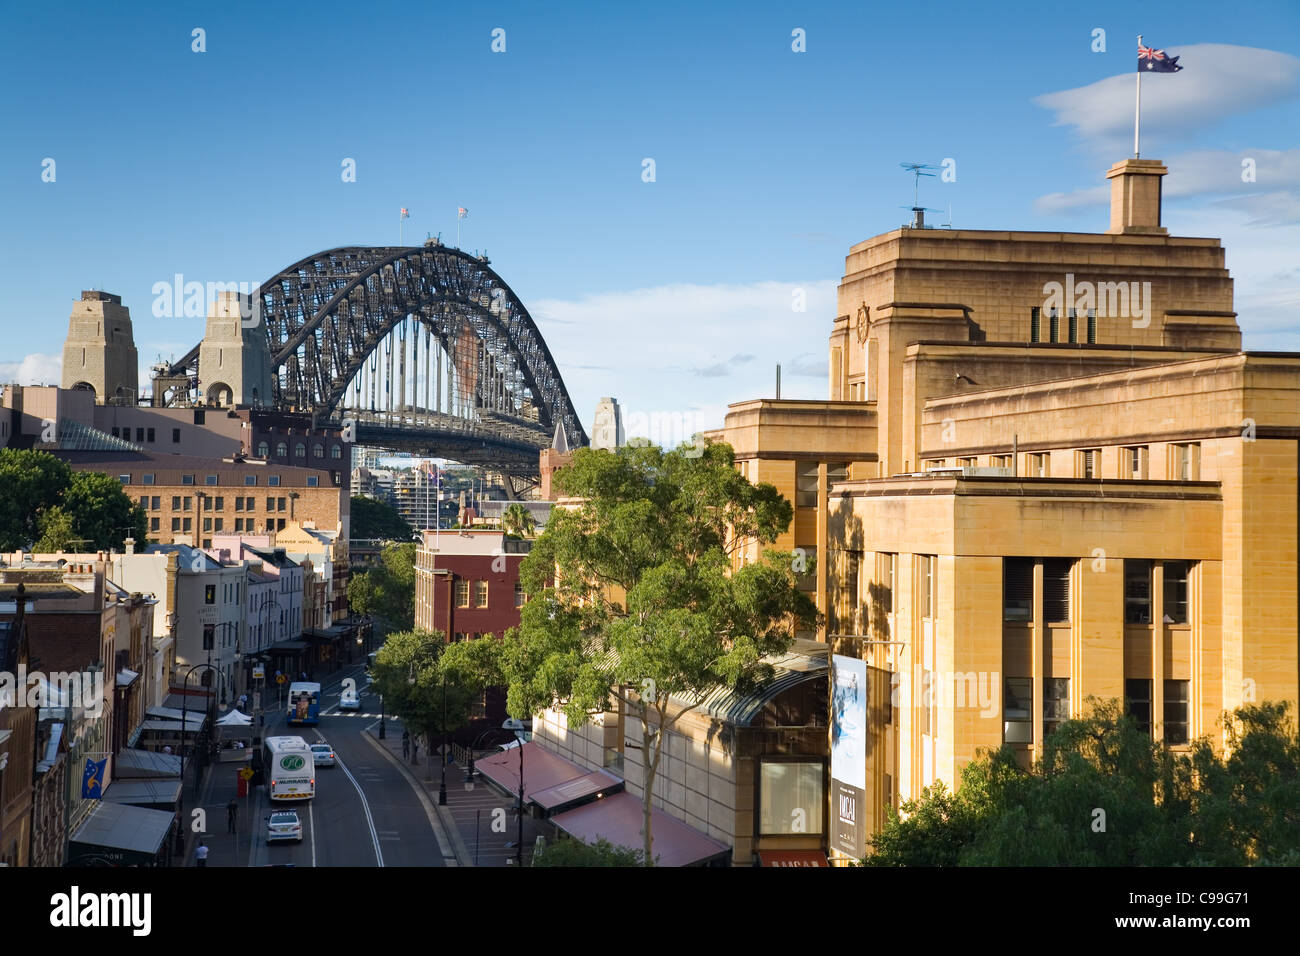 Voir l'historique le long de la rue George dans les rochers, avec Sydney Harbour Bridge au-delà. Sydney, New South Wales, Australia Banque D'Images